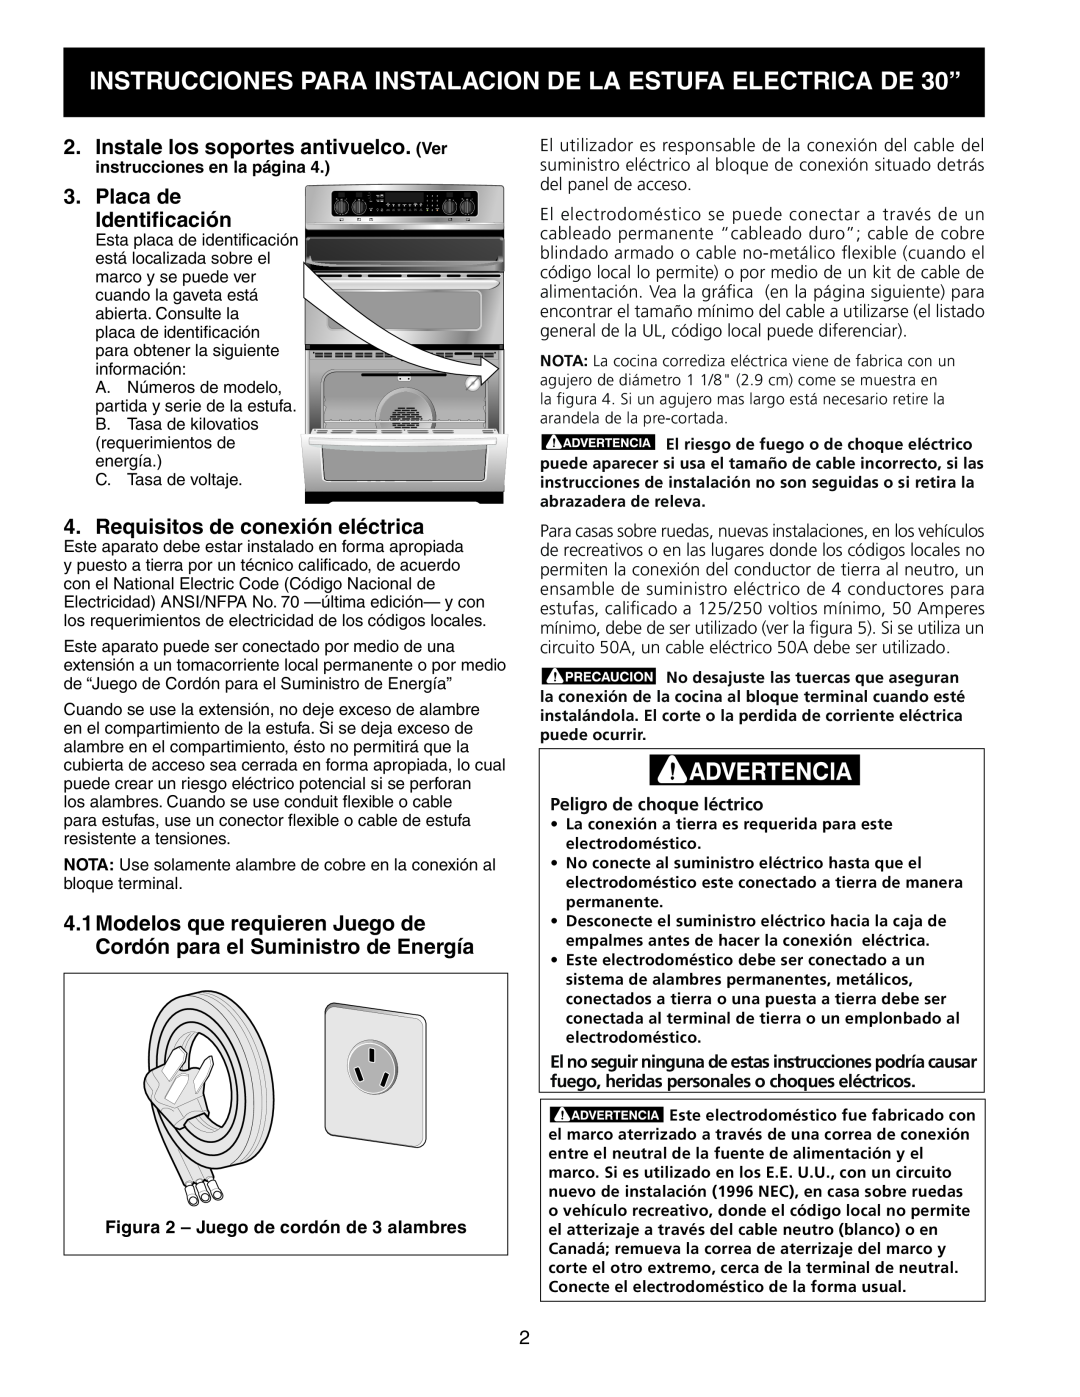 Frigidaire 318201724 manual Instale los soportes antivuelco. Ver, Placa de Identificación, Requisitos de conexión eléctrica 